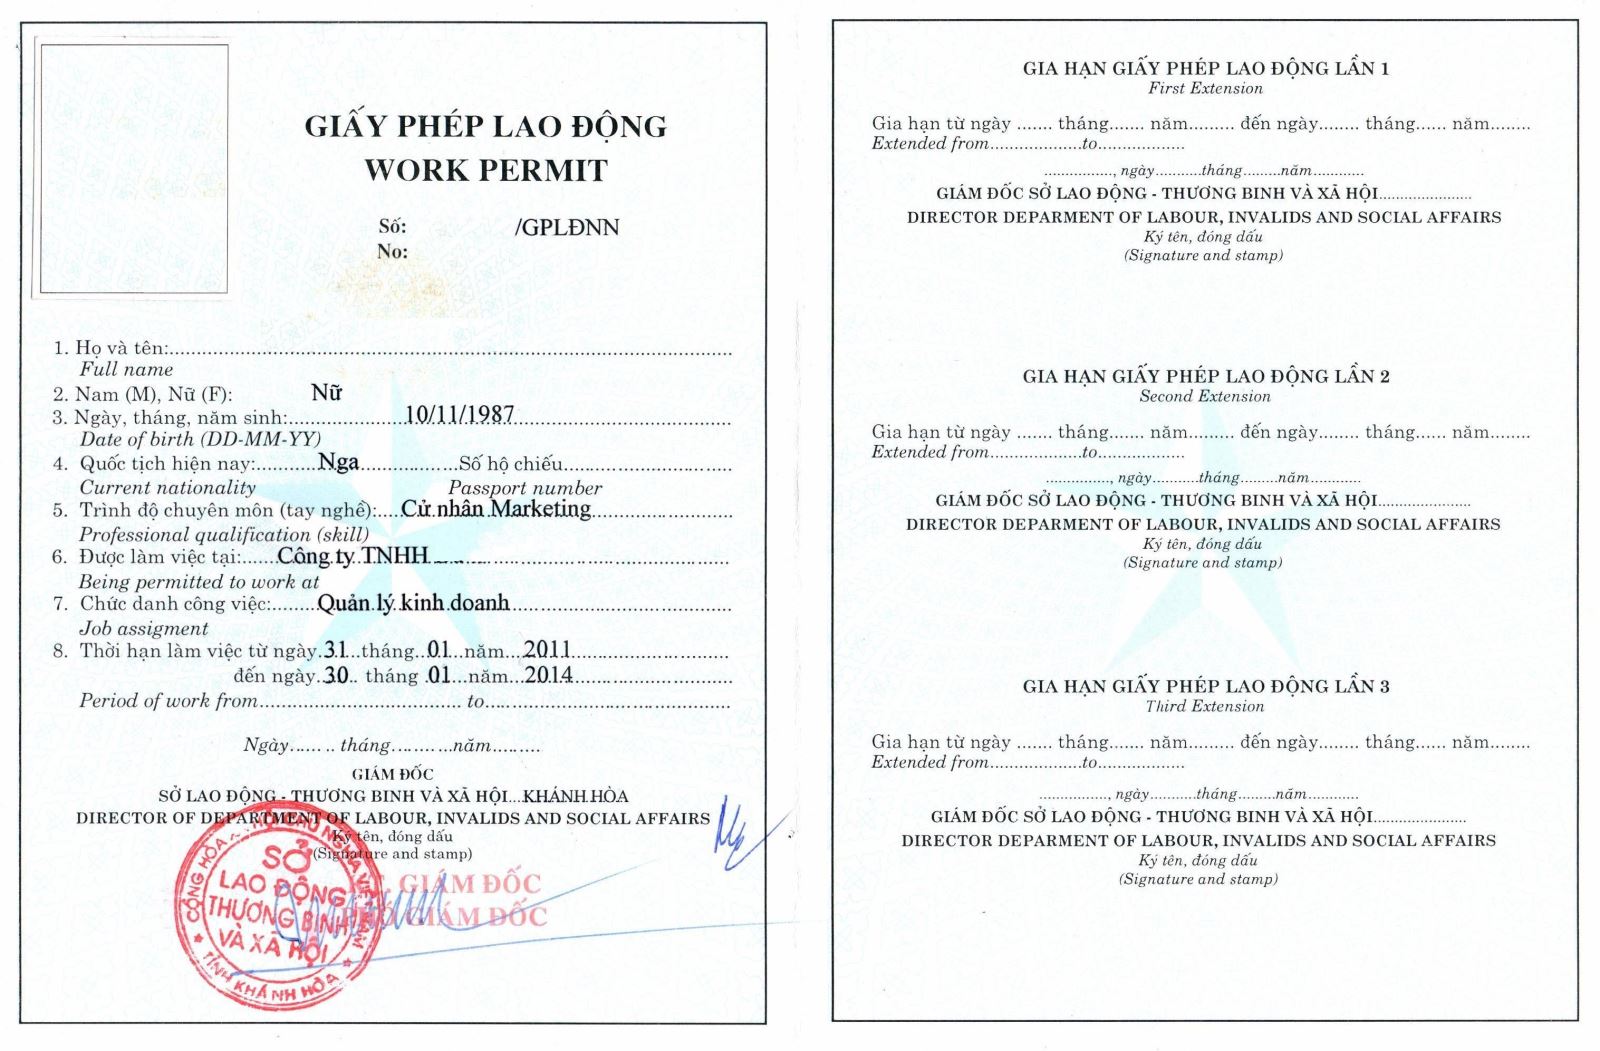 Dịch vụ tư vấn thủ tục xin cấp VISA, giấy phép lao động cho người lao động nước ngoài tại Việt Nam mới nhất